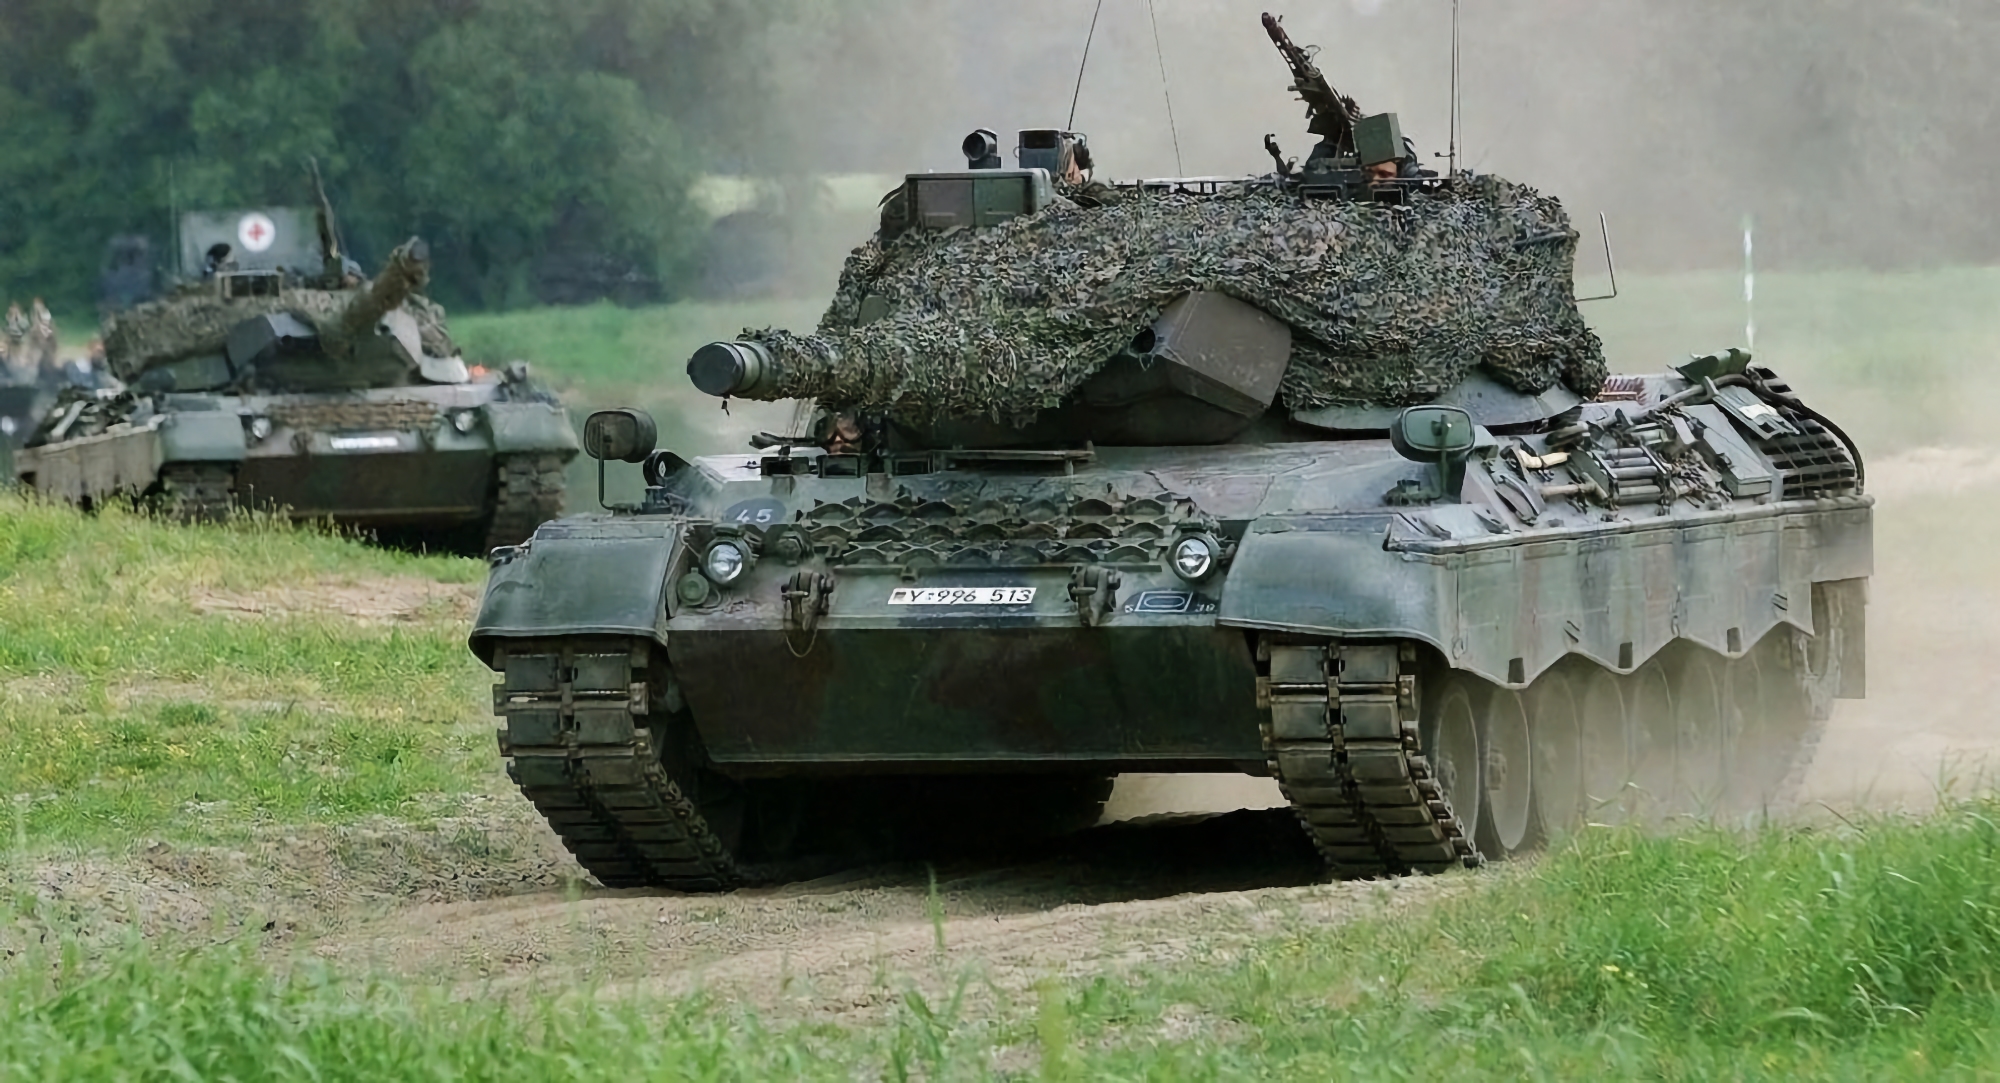 De Standaard : un pays inconnu a acheté 50 chars Leopard 1 à la Belgique et les a déjà expédiés en Ukraine